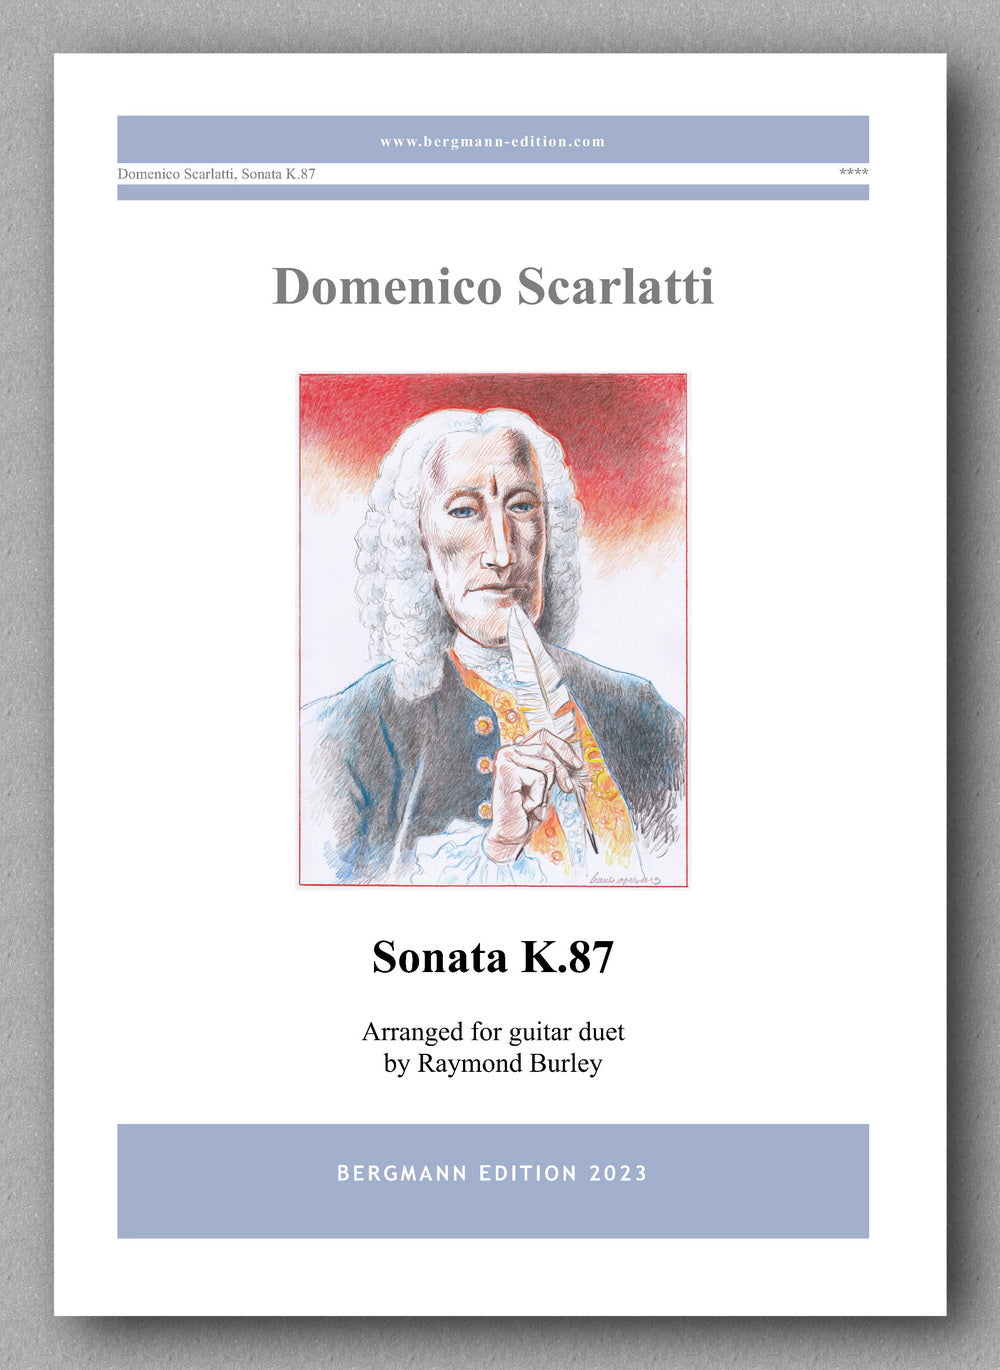 Domenico Scarlatti, Sonata K.87 - preview of the cover